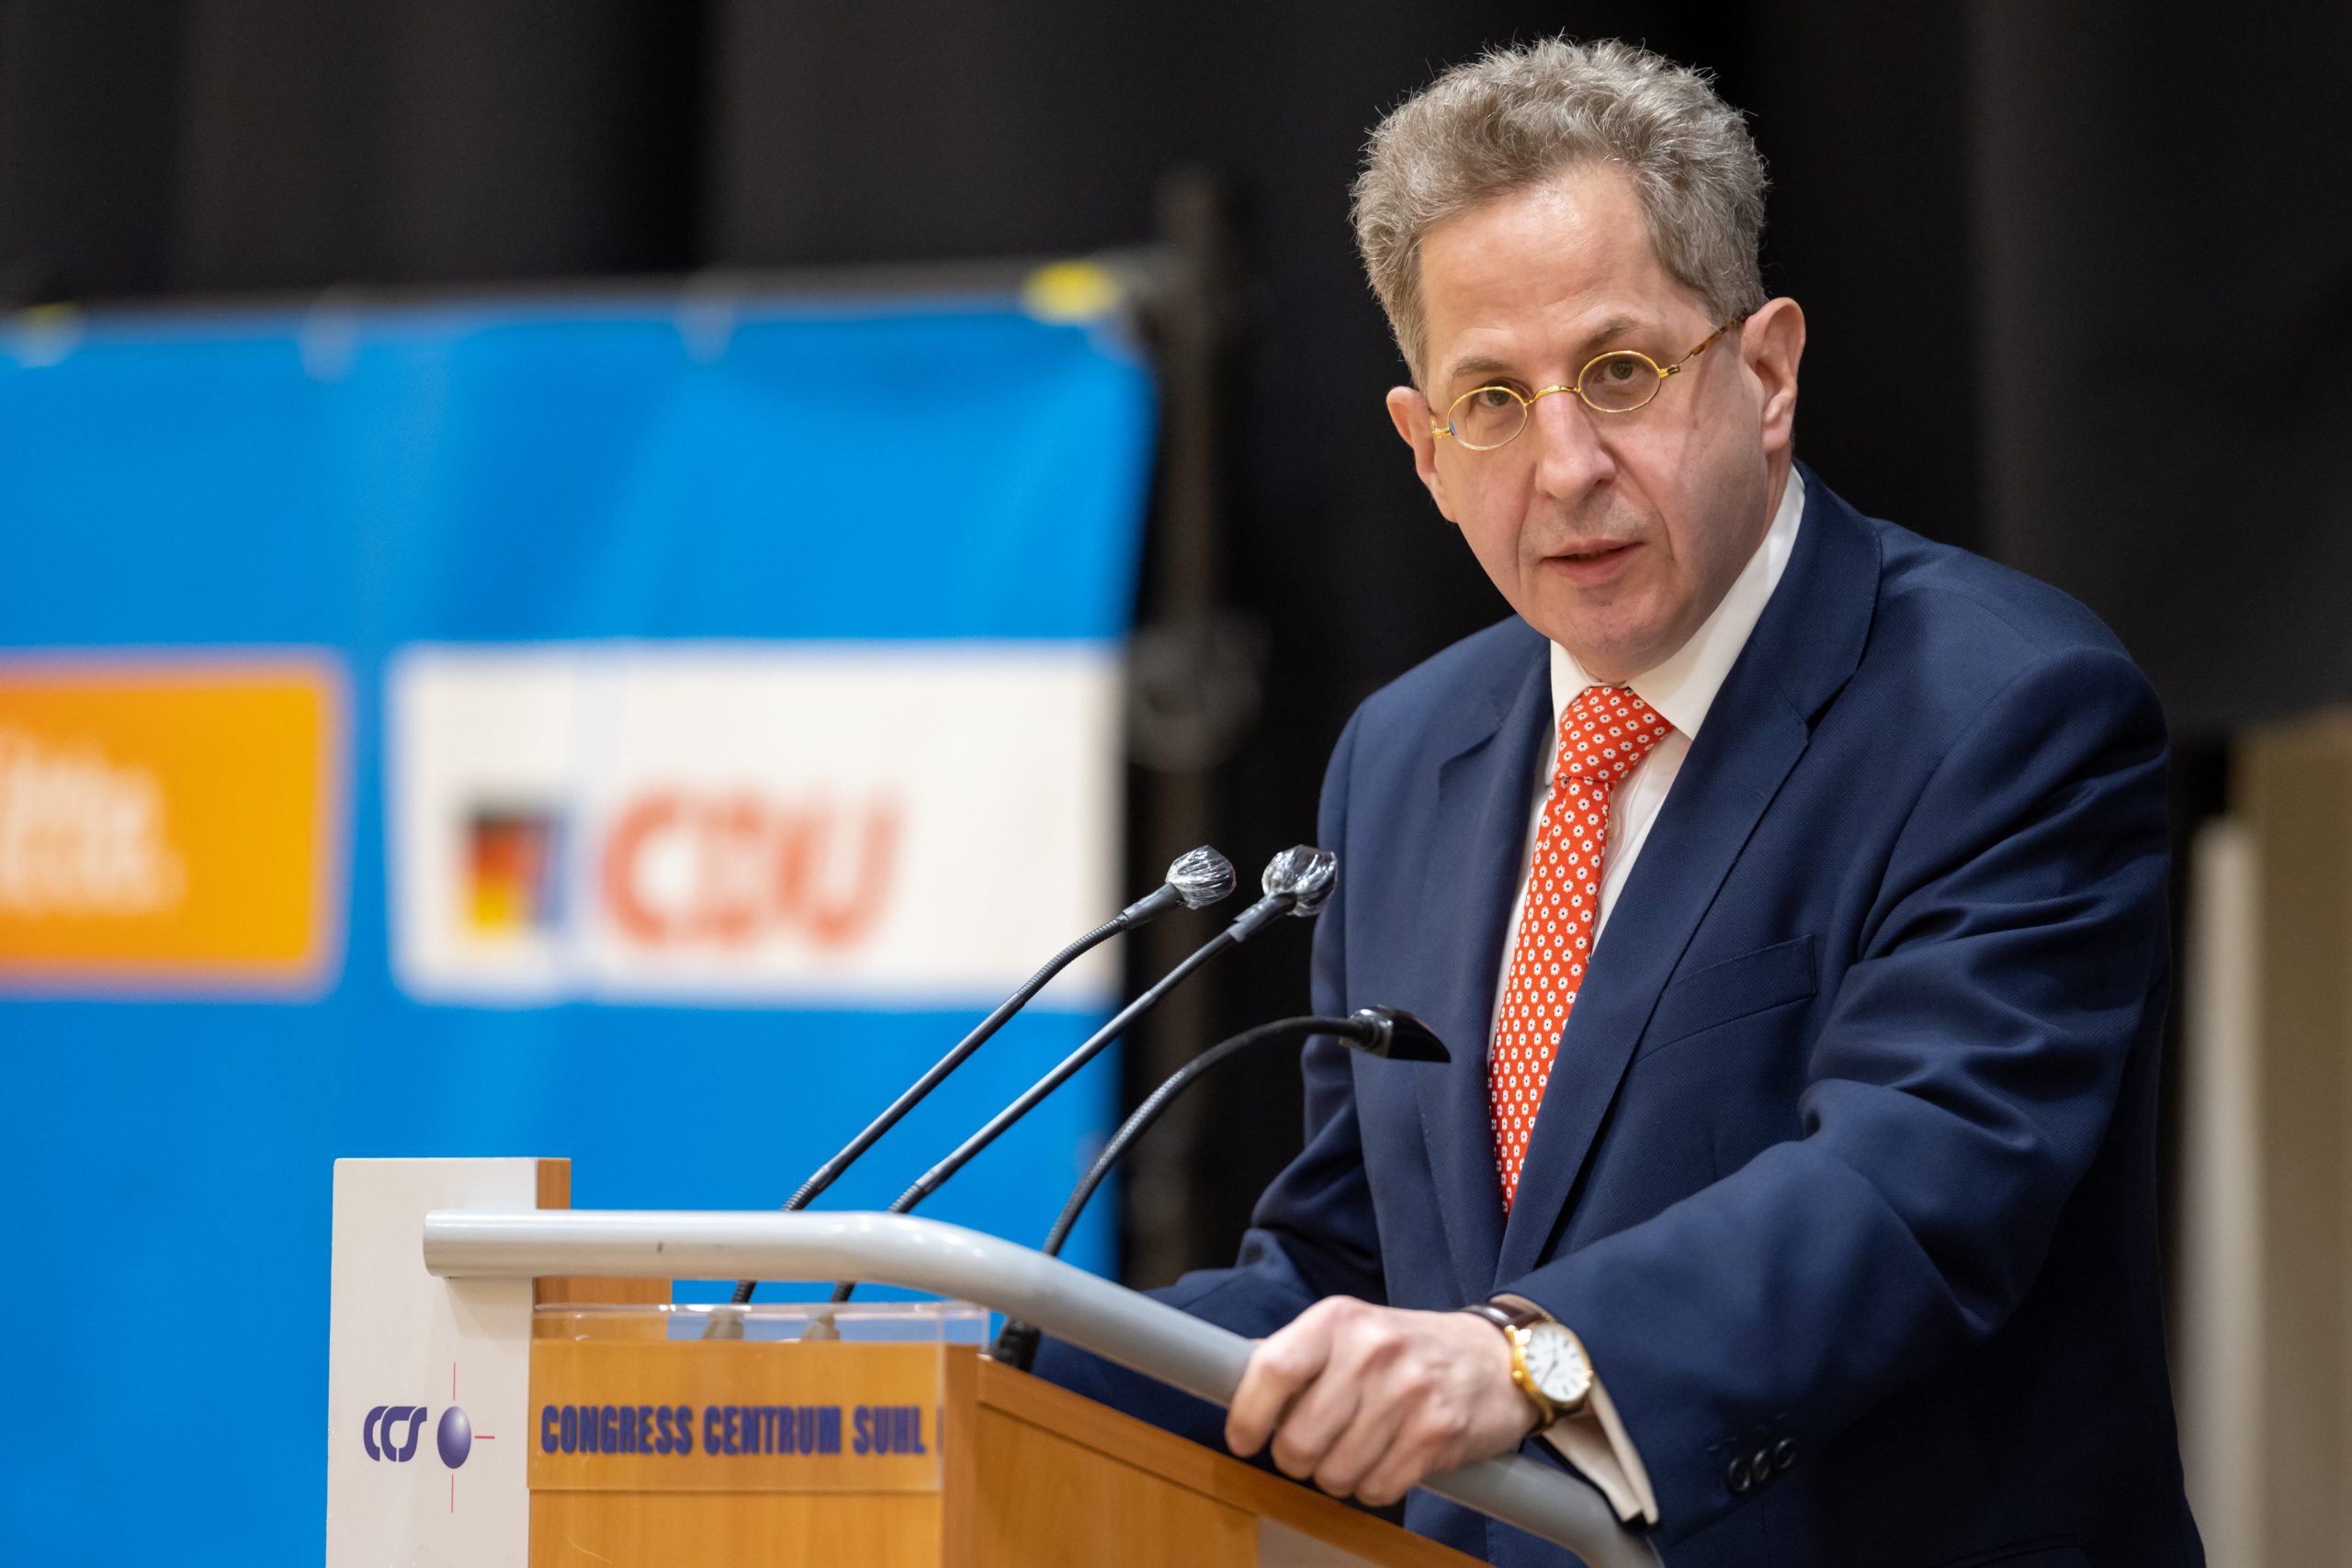 Hans-Georg Maaßen (CDU) sieht im öffentlich-rechtlichen Rundfunk Verbindungen zur linken Szene.